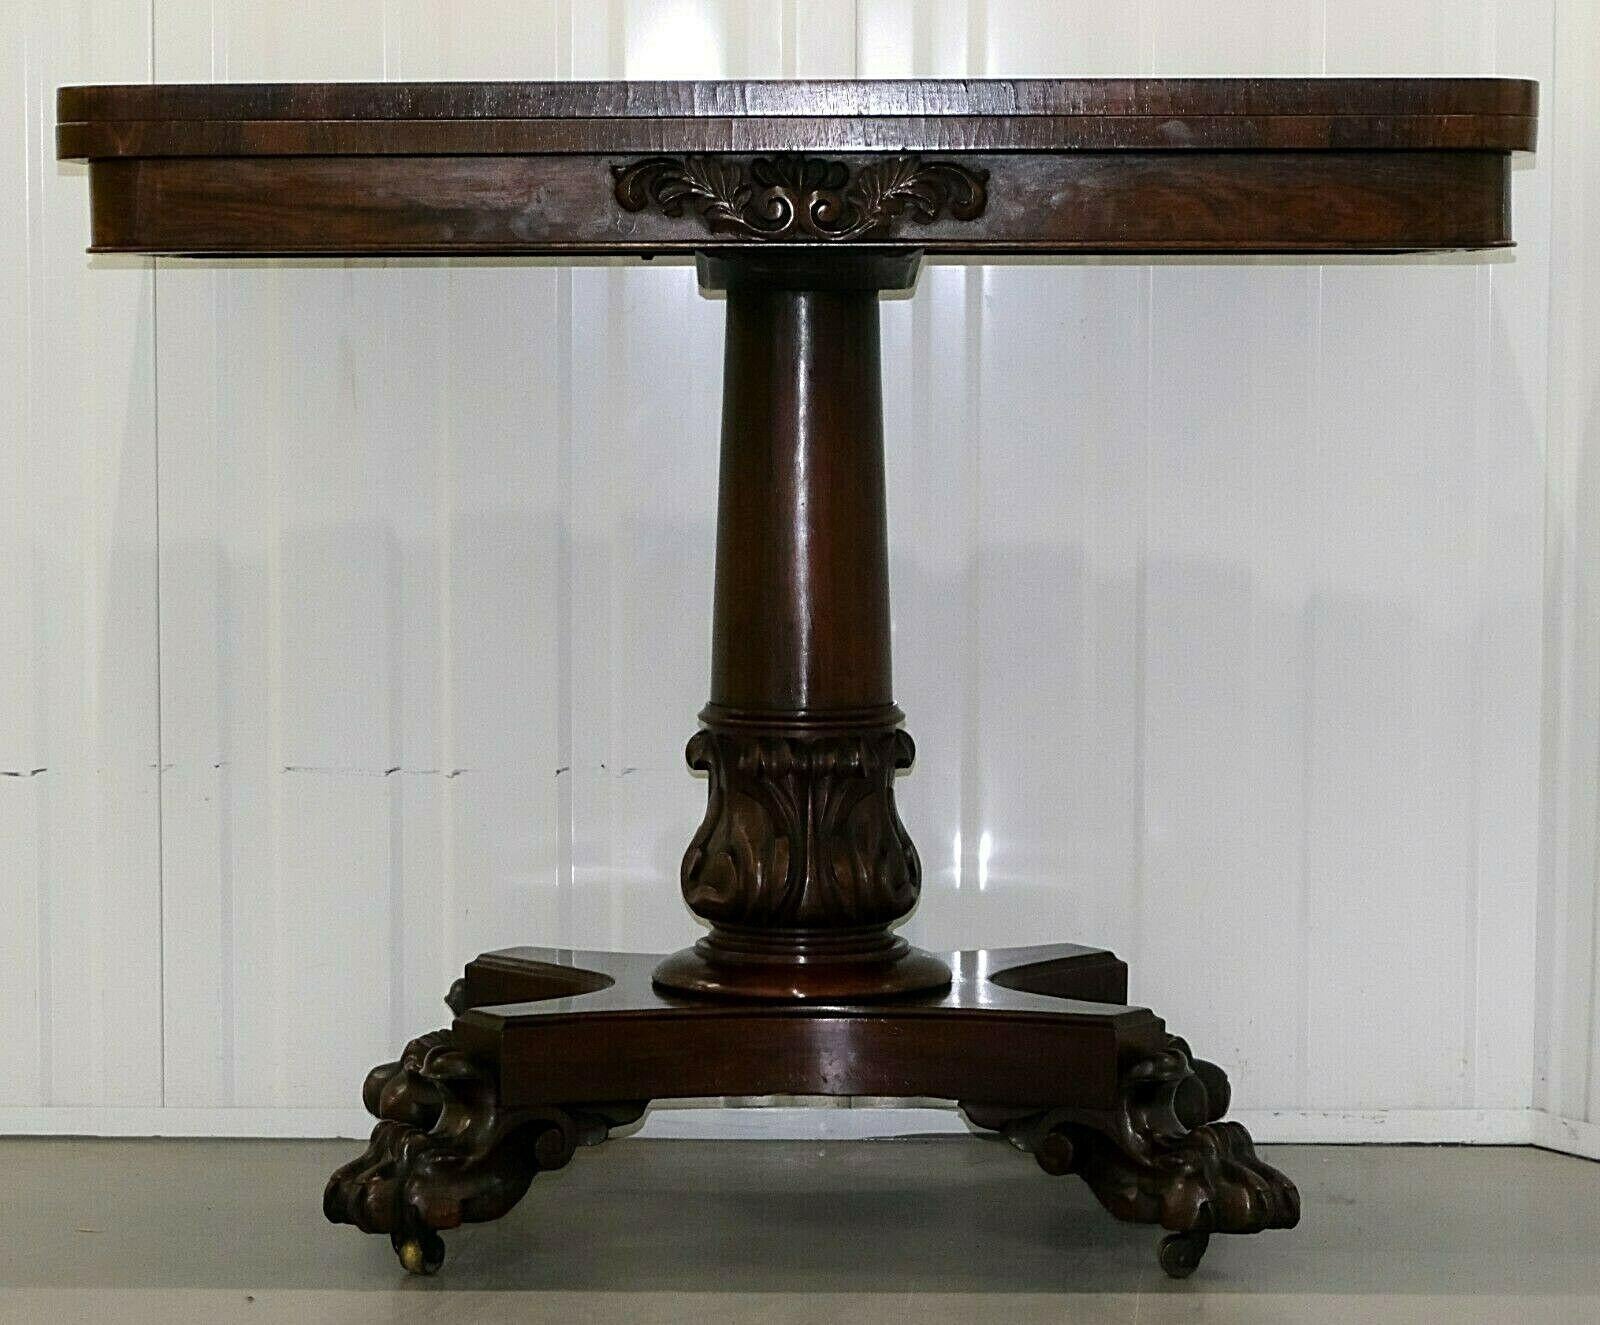 Nous sommes ravis de proposer à la vente cette superbe table à cartes en bois dur de style Régence, datant du XIXe siècle.

Tournez et soulevez le couvercle pour révéler une surface ronde tapissée de bleu. La table repose sur de beaux pieds en